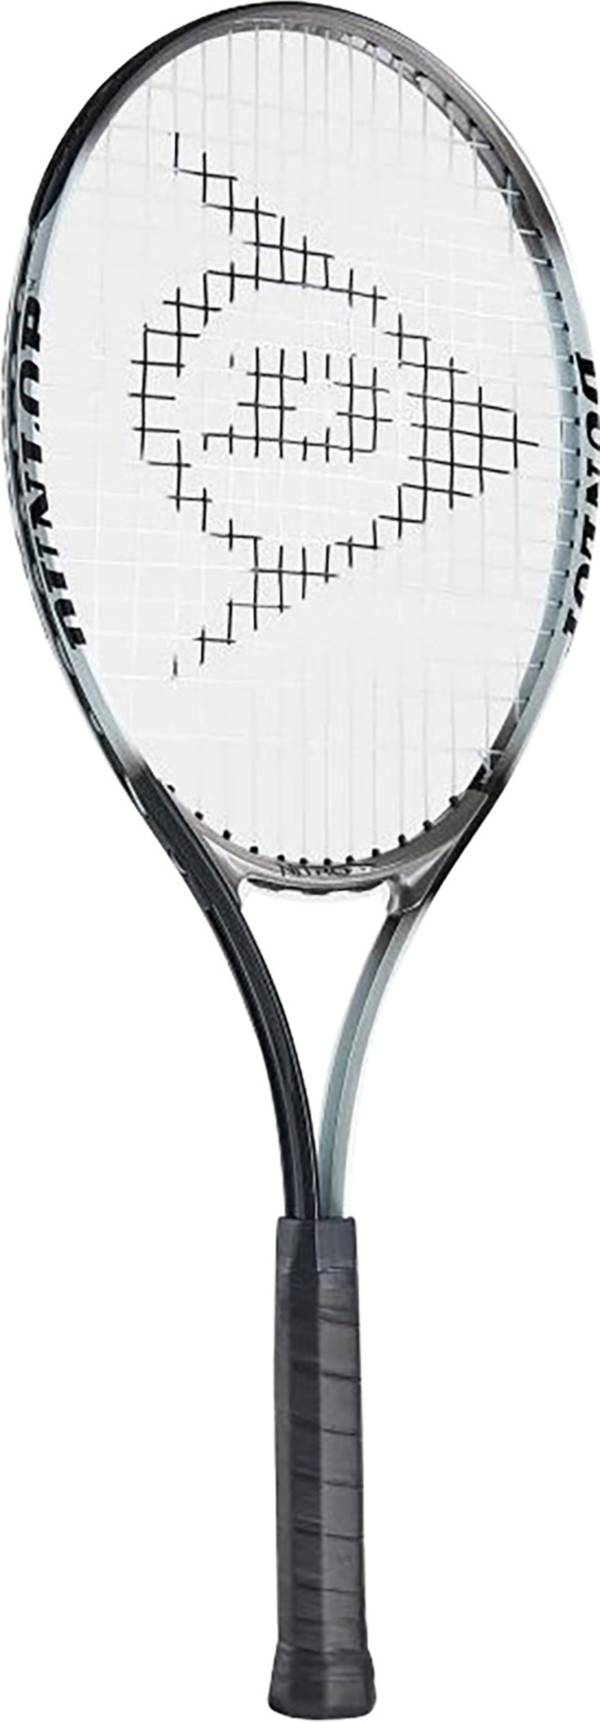 Dunlop Sports - Tennis